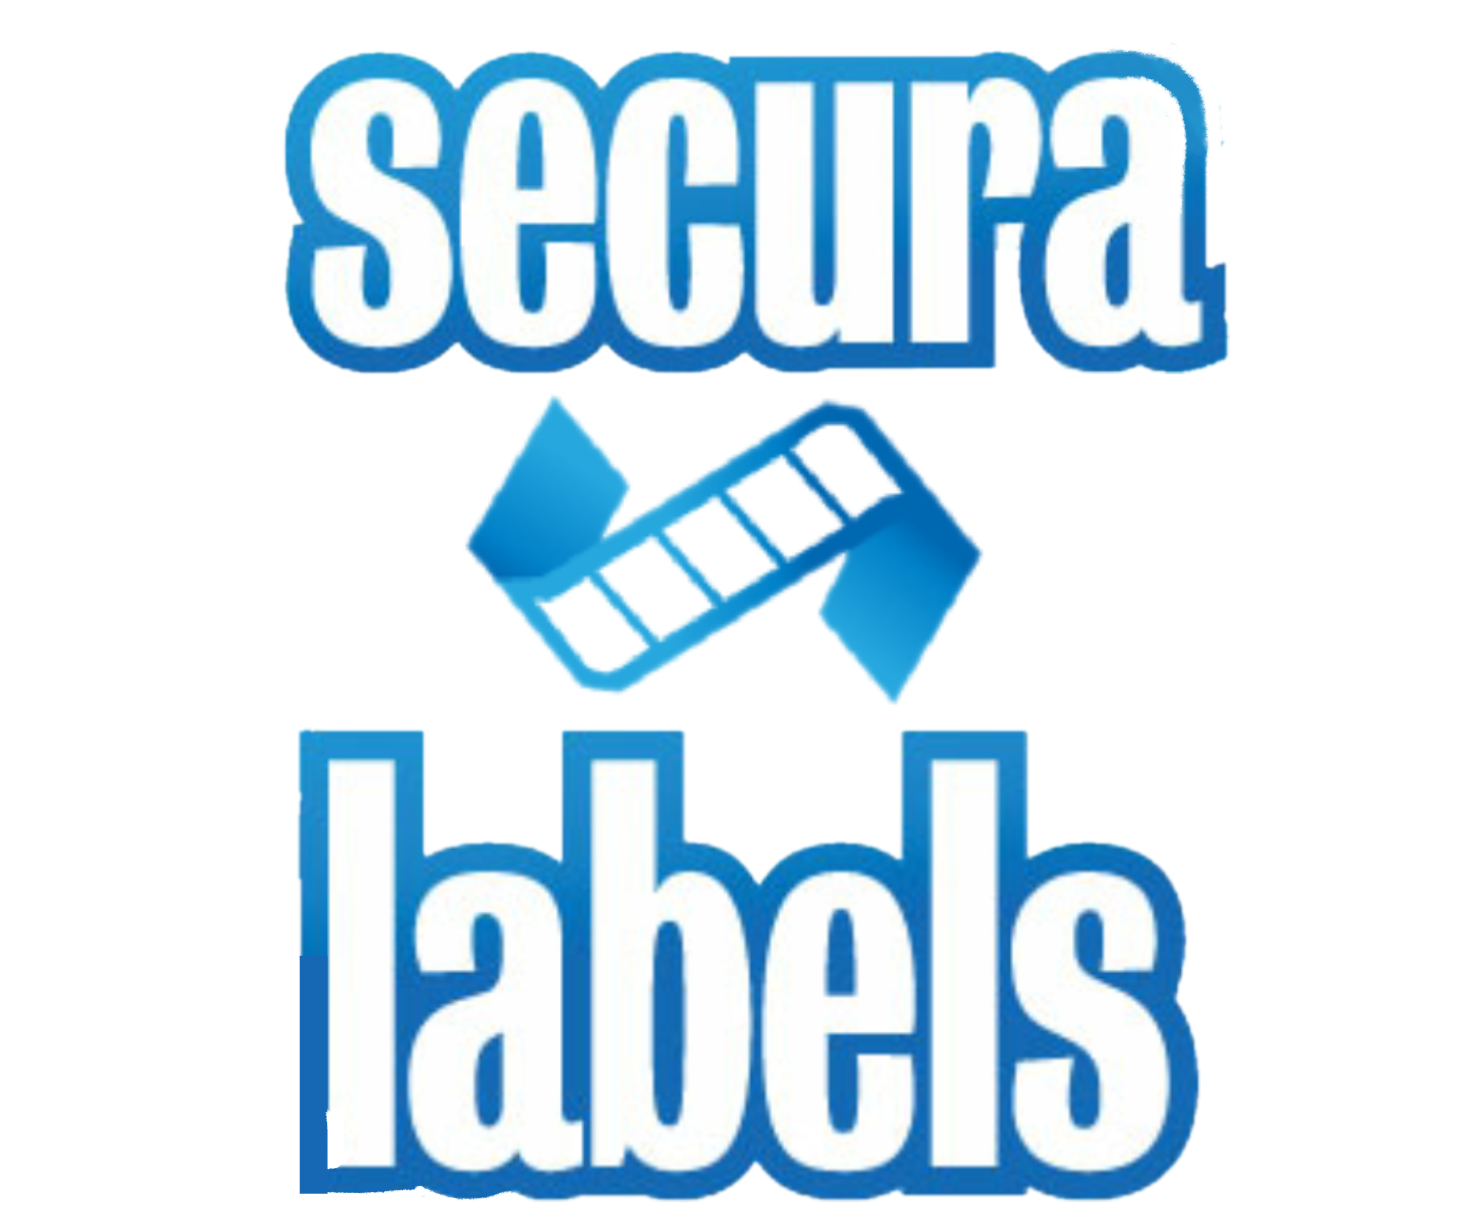 Secura Labels